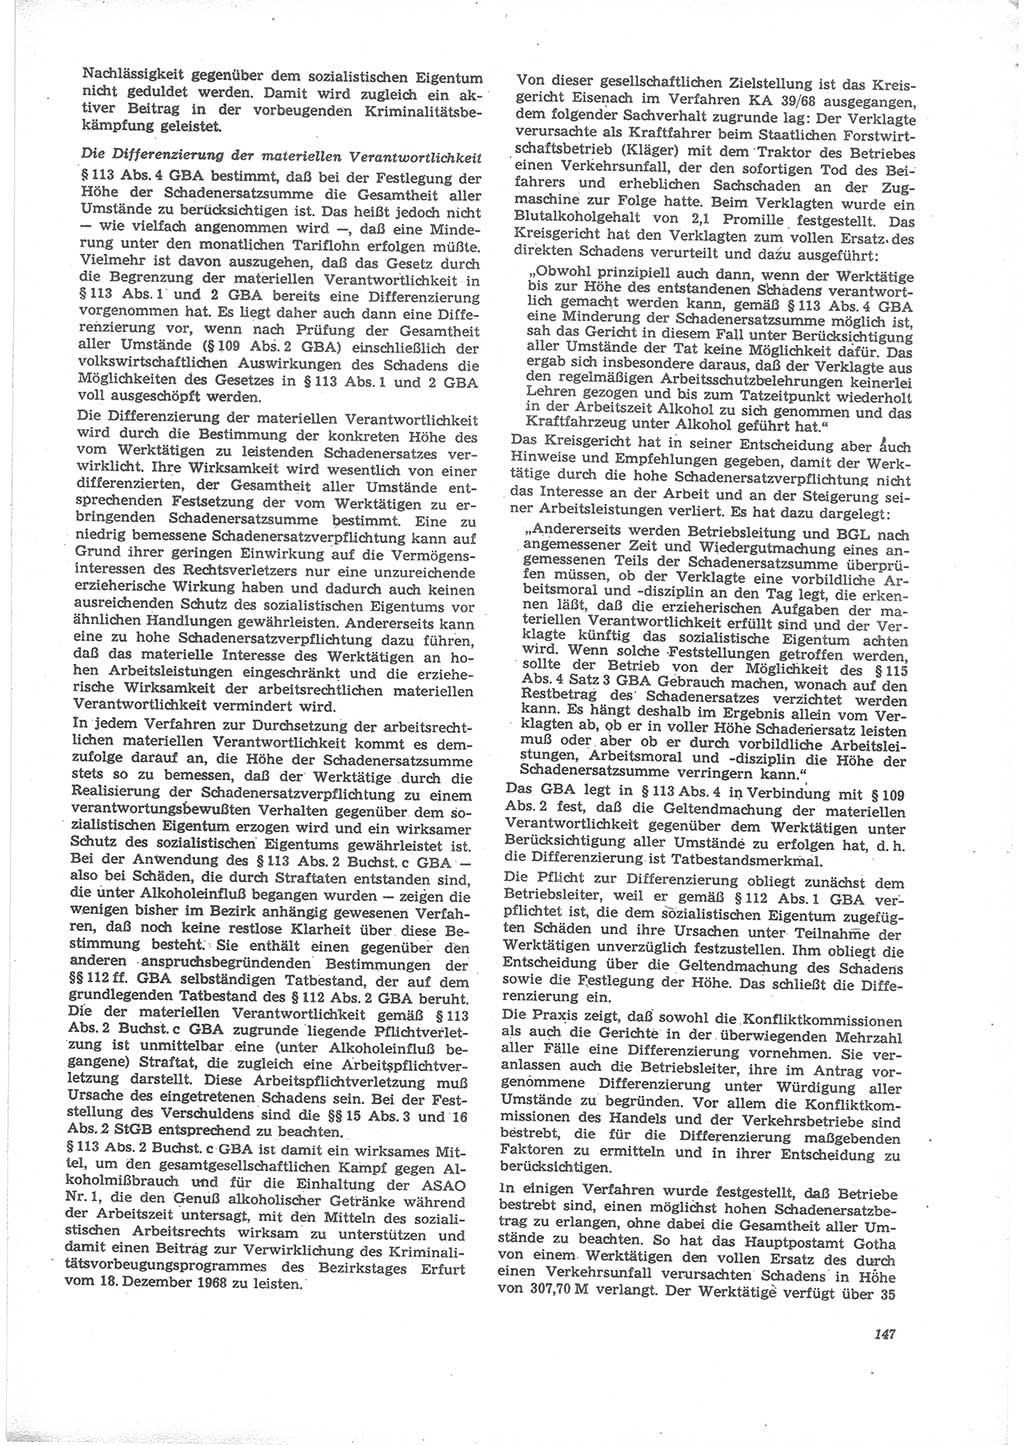 Neue Justiz (NJ), Zeitschrift für Recht und Rechtswissenschaft [Deutsche Demokratische Republik (DDR)], 24. Jahrgang 1970, Seite 147 (NJ DDR 1970, S. 147)